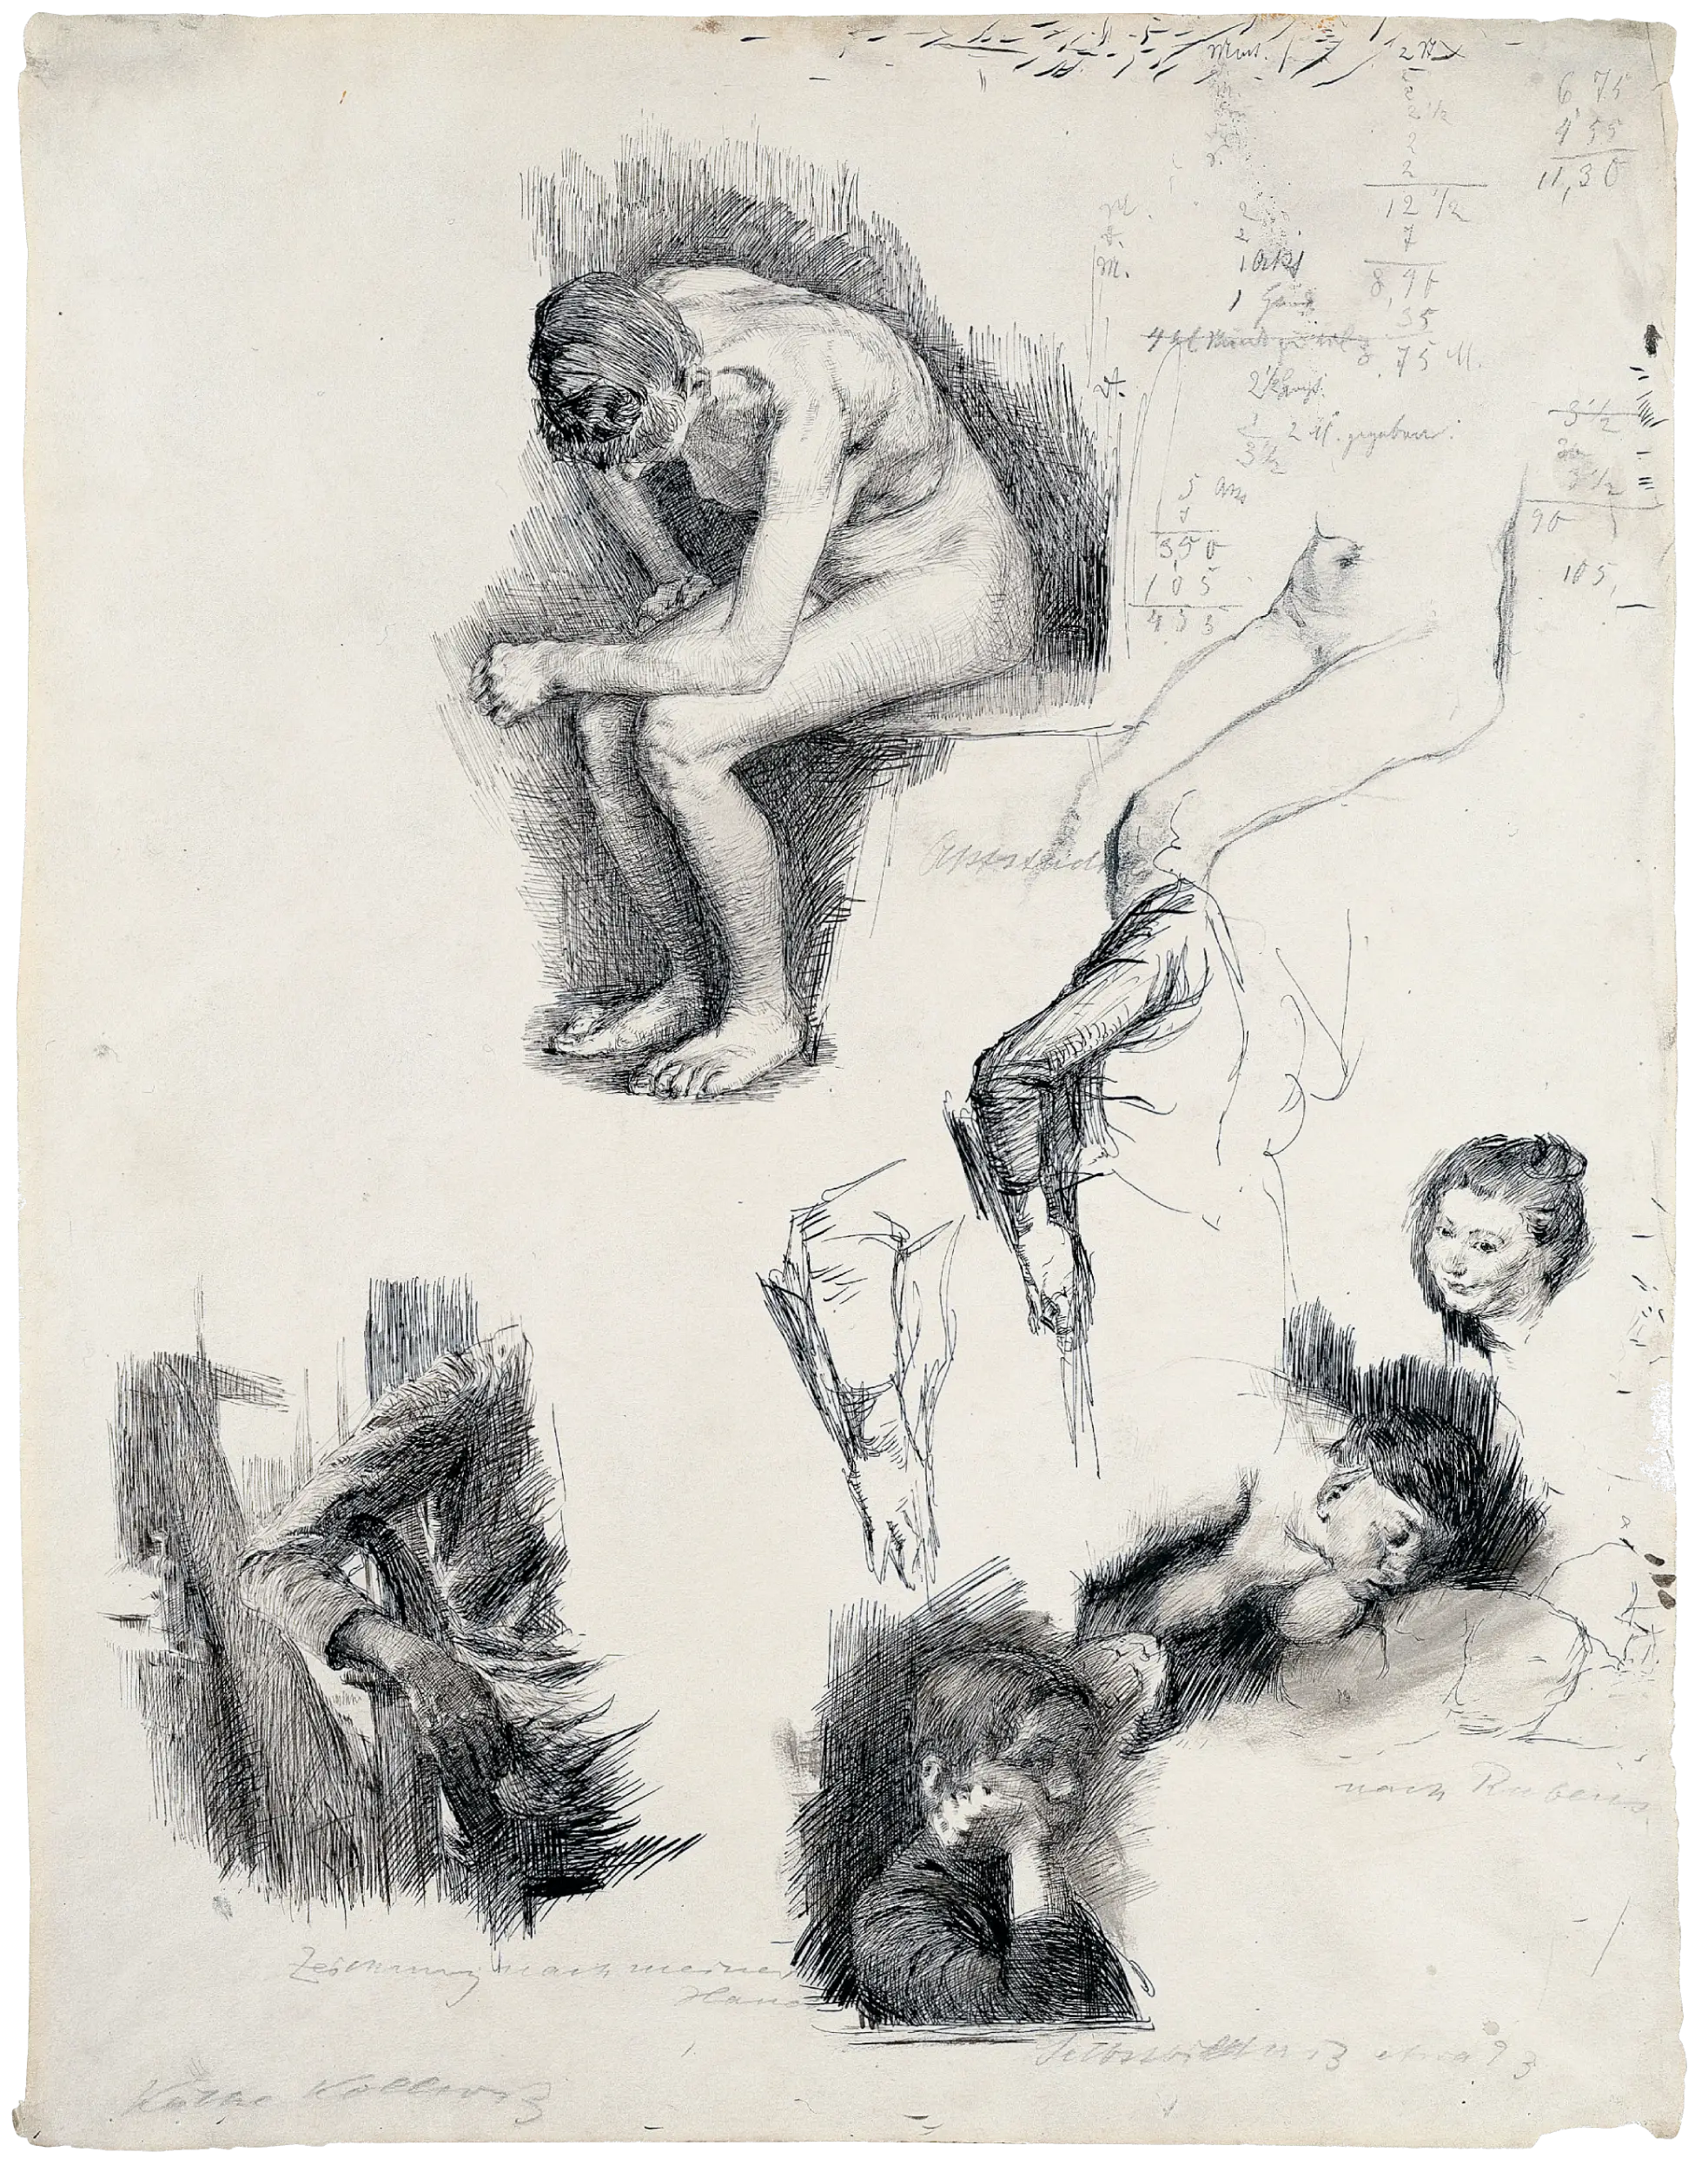 Käthe Kollwitz, Studienblatt mit Skizzen nach Rubens und Selbstbildnis, um 1890/91